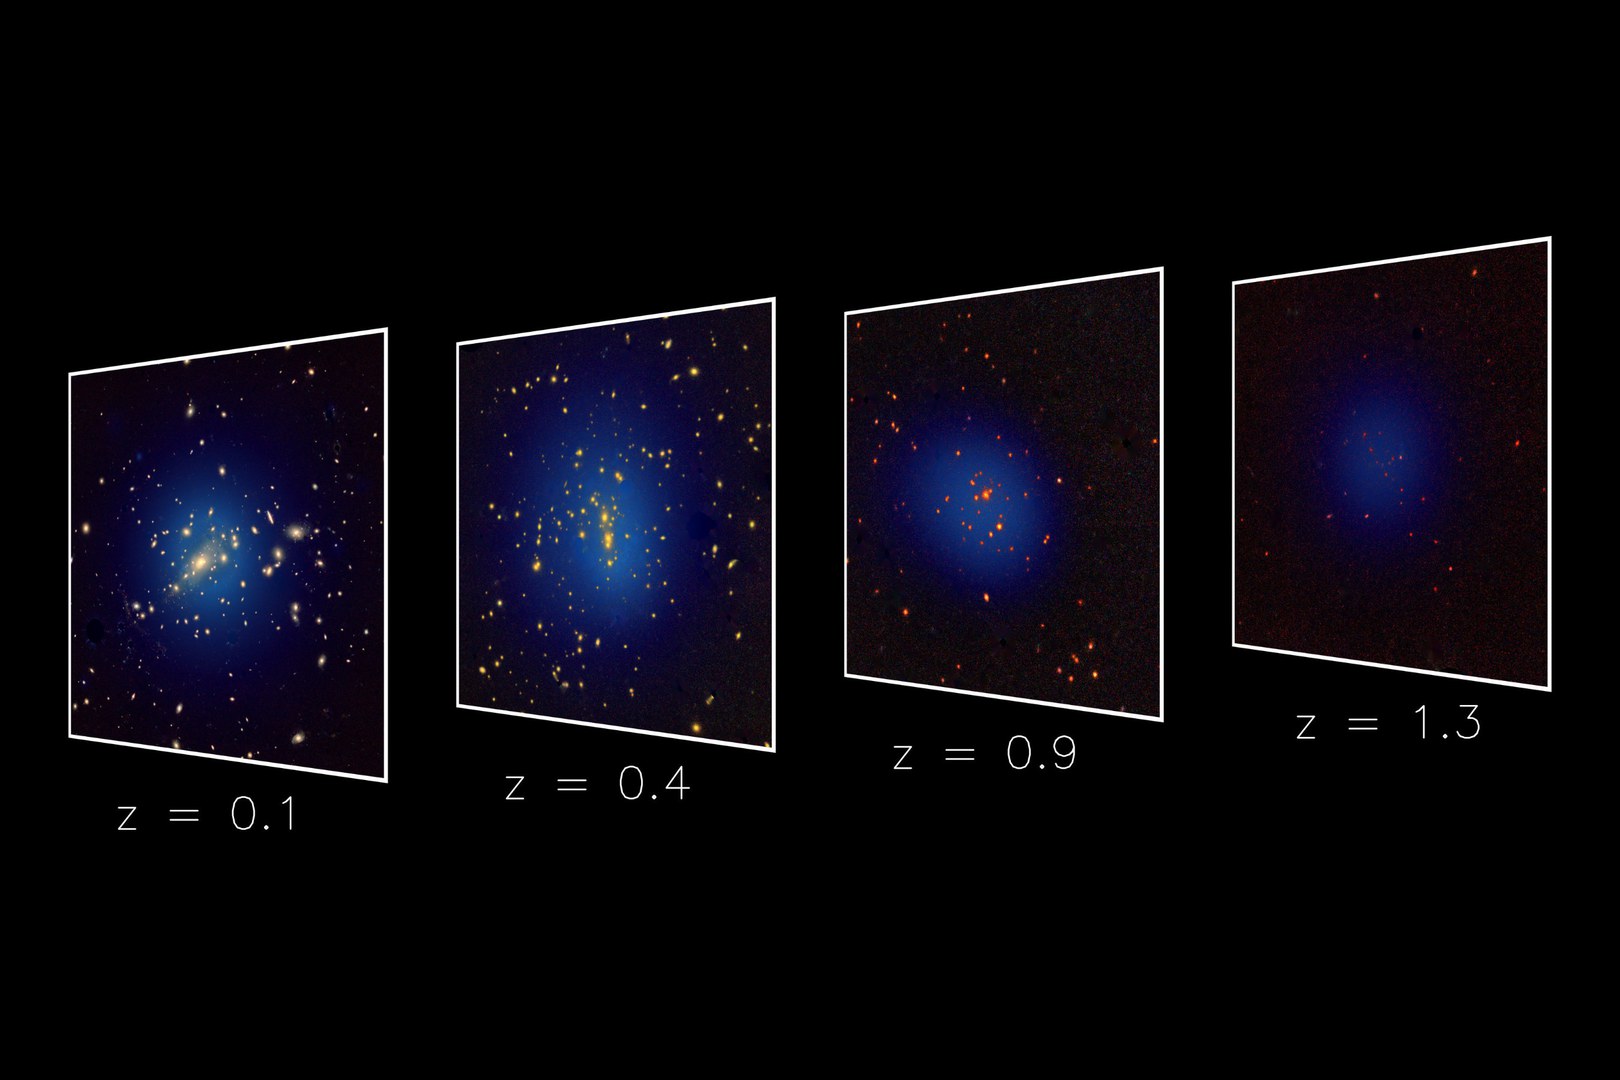 Es werden Galaxien in Richtung von vier Galaxienhaufen in unterschiedlichen Entfernungen dargestellt. Die Röntgenemission von heißem Gas in den Haufen ist in blau dargestellt. Es werde jedoch nur die Galaxien angezeigt, die in den jeweiligen Haufen zu erwarten sind (und nicht im Vorder- oder Hintergrund).